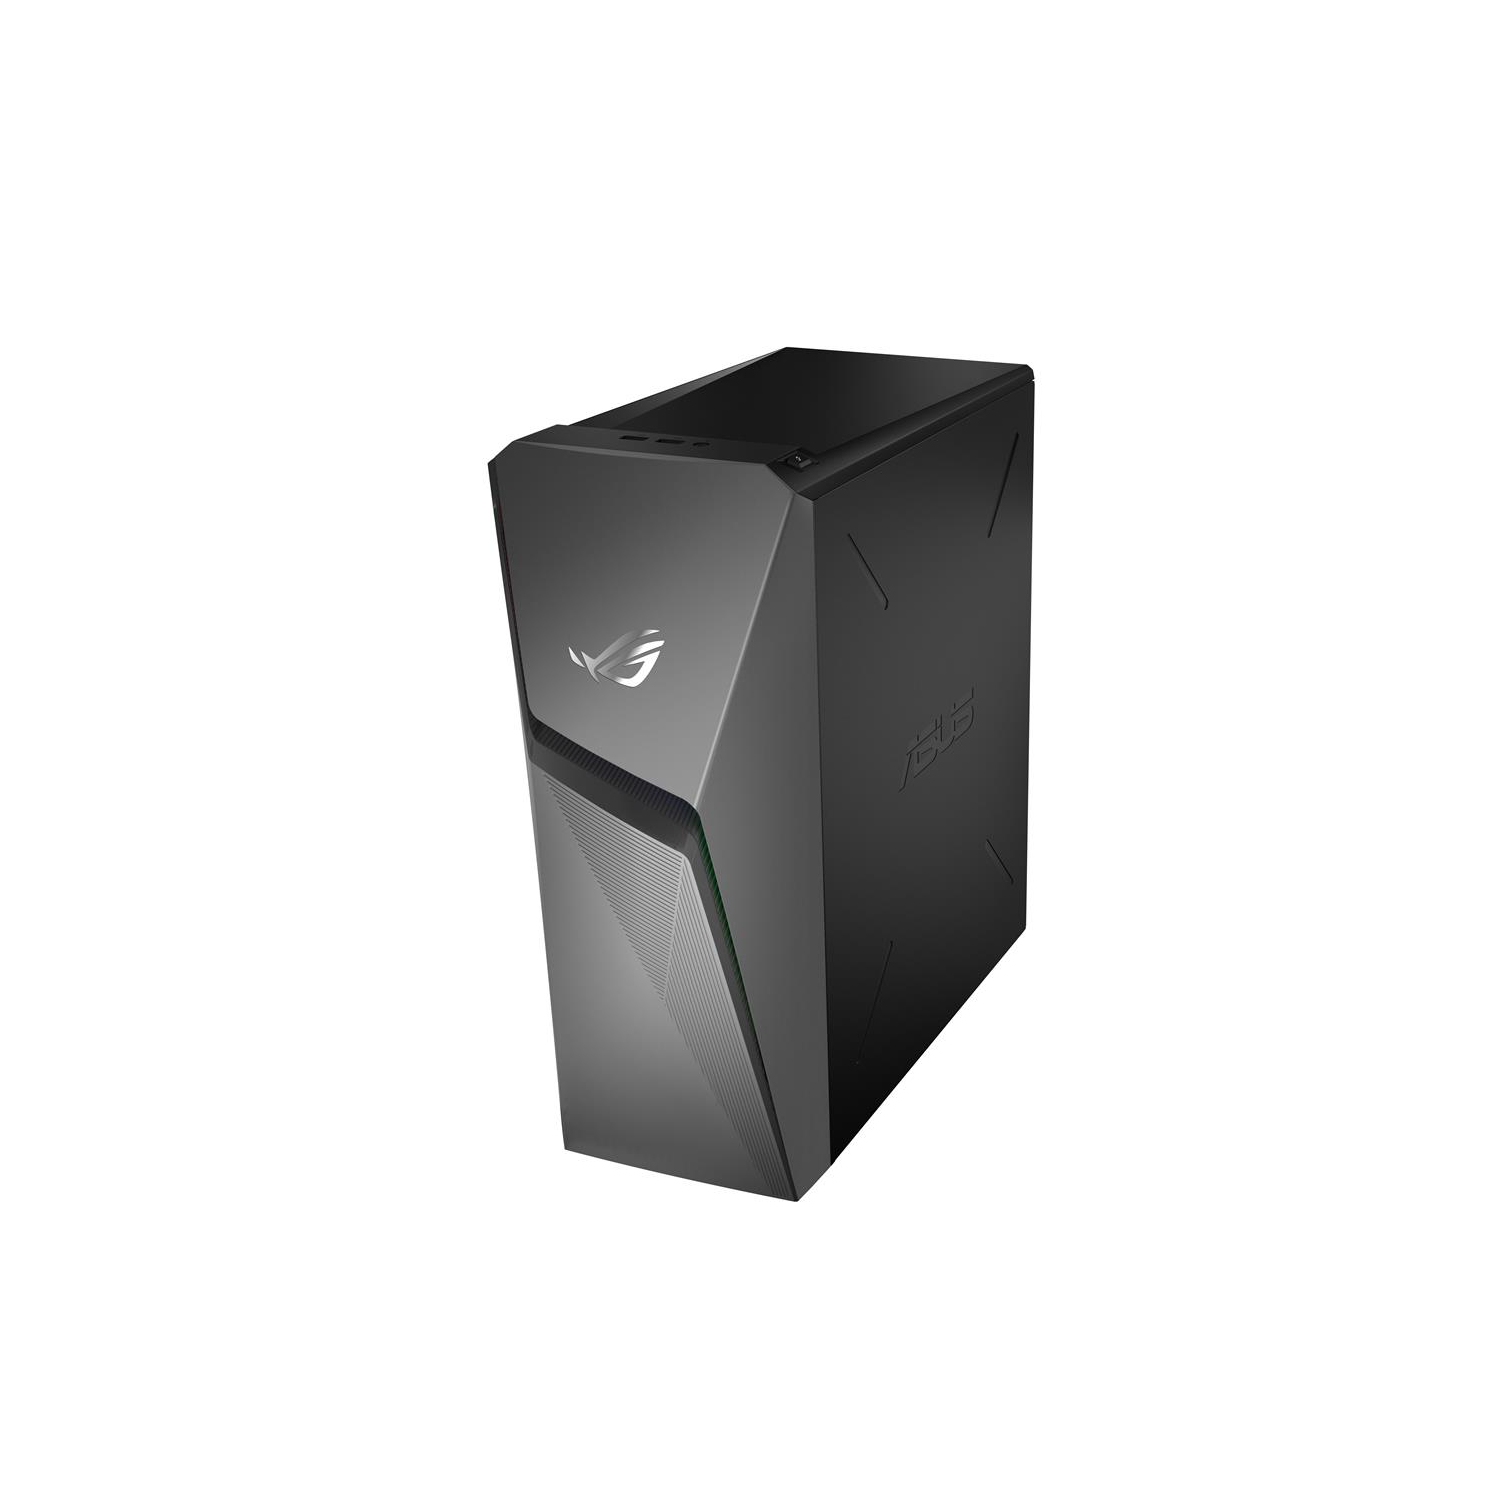 ASUS ROG Strix Gaming Desktop, Intel Core i7-11700F, NVIDIA 